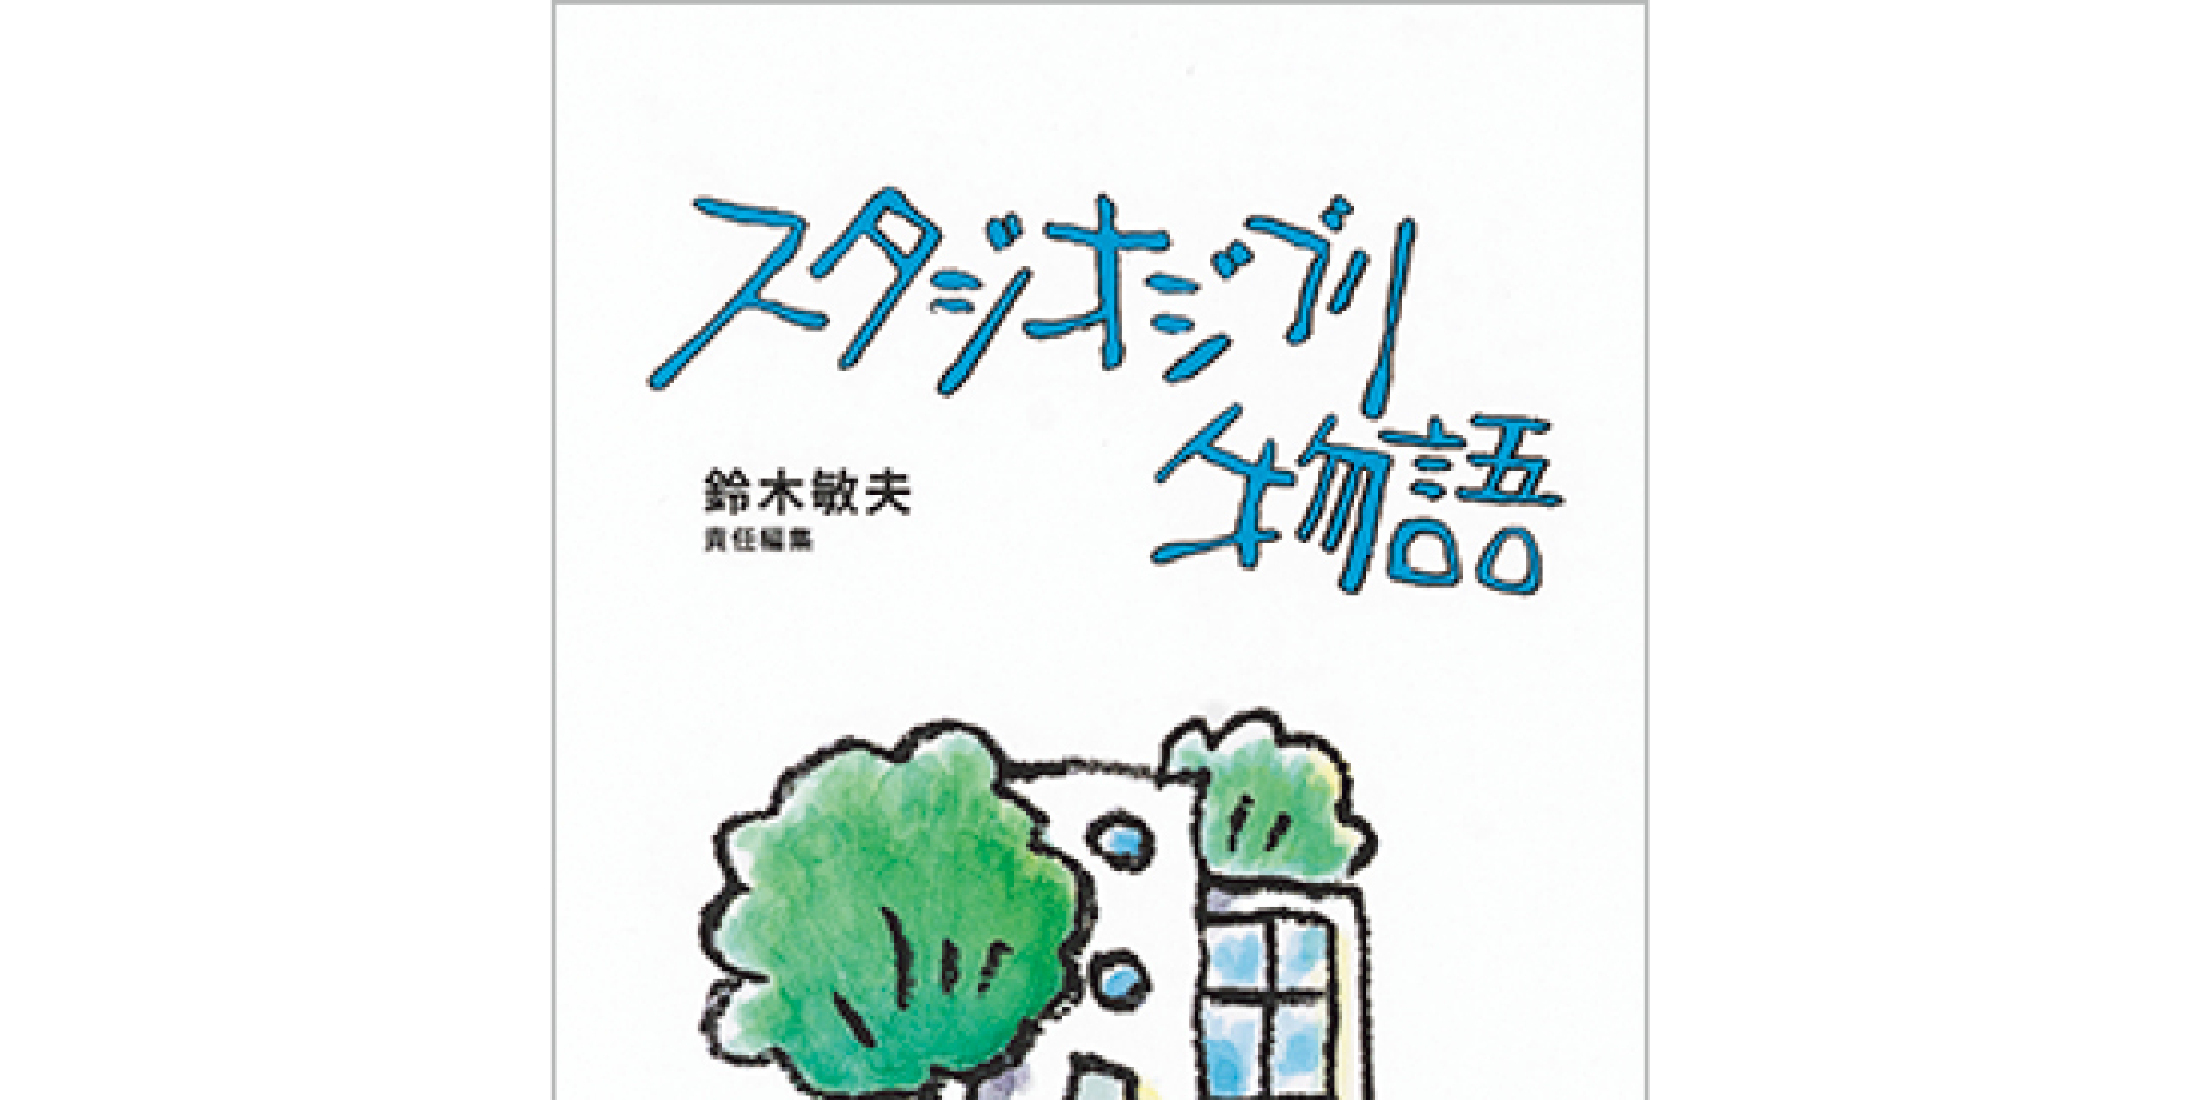 【最新本】スタジオジブリ40年、波乱万丈の物語が一冊の本に！